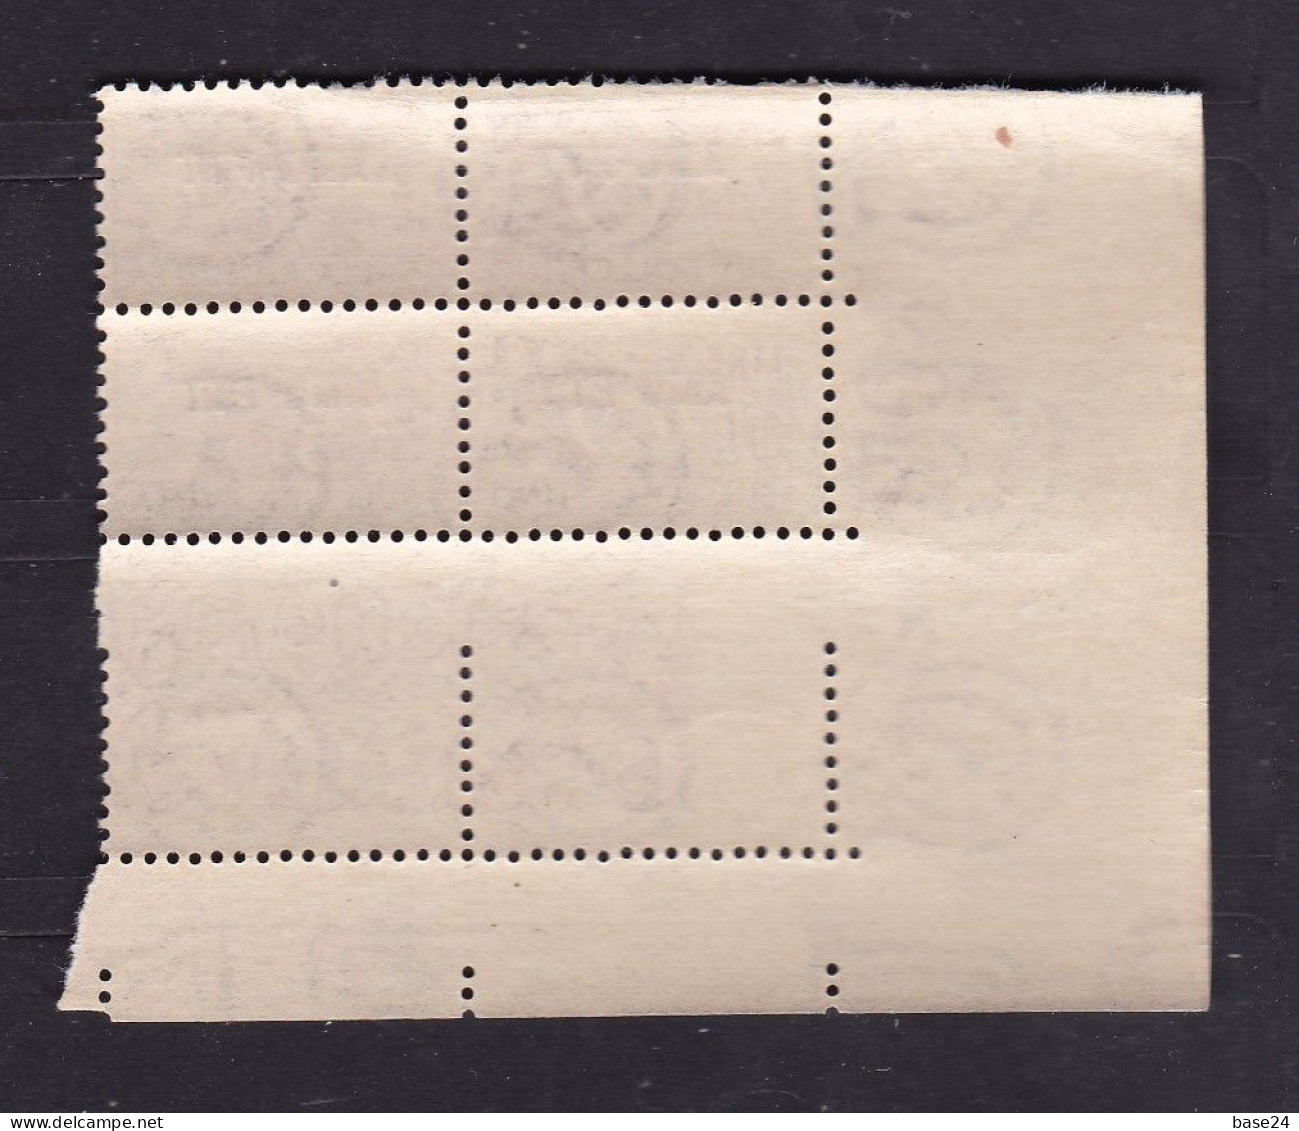 1949 Italia Italy Trieste A  PACCHI POSTALI Corno (Rm) 30 Lire 2 Valori, Coppia MNH** Parcel Post Couple - Paquetes Postales/consigna